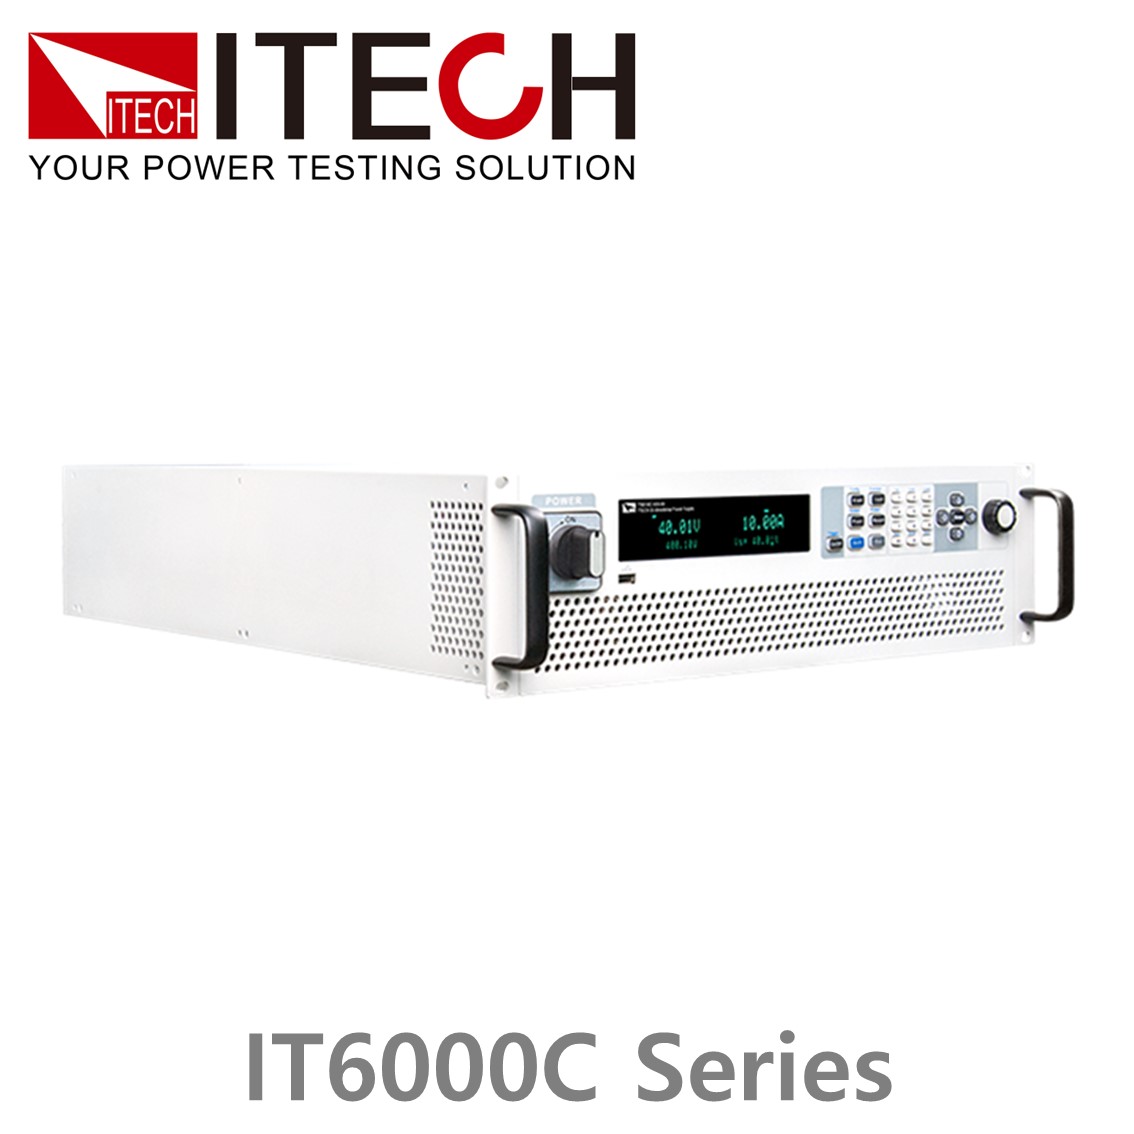 [ ITECH ] IT6000C시리즈 양방향 프로그래머블 DC전원공급기 (5~144kW...2MW)